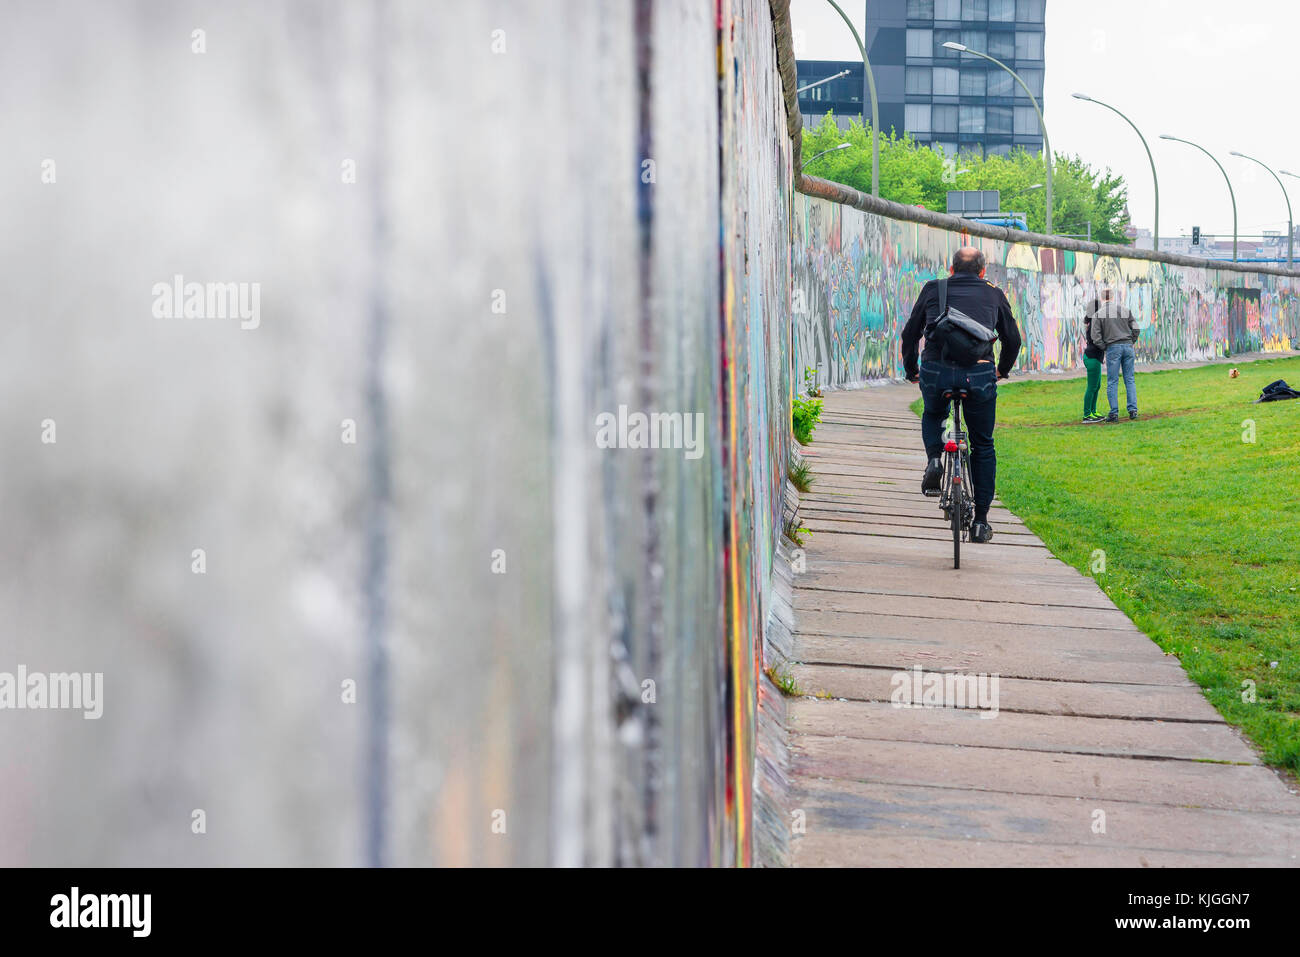 Berliner Mauer, Blick auf einen Teil der Berliner Mauer, der einst die Stadt zwischen Ost und West teilte, der noch in Friedrichshain, Berlin, steht Stockfoto